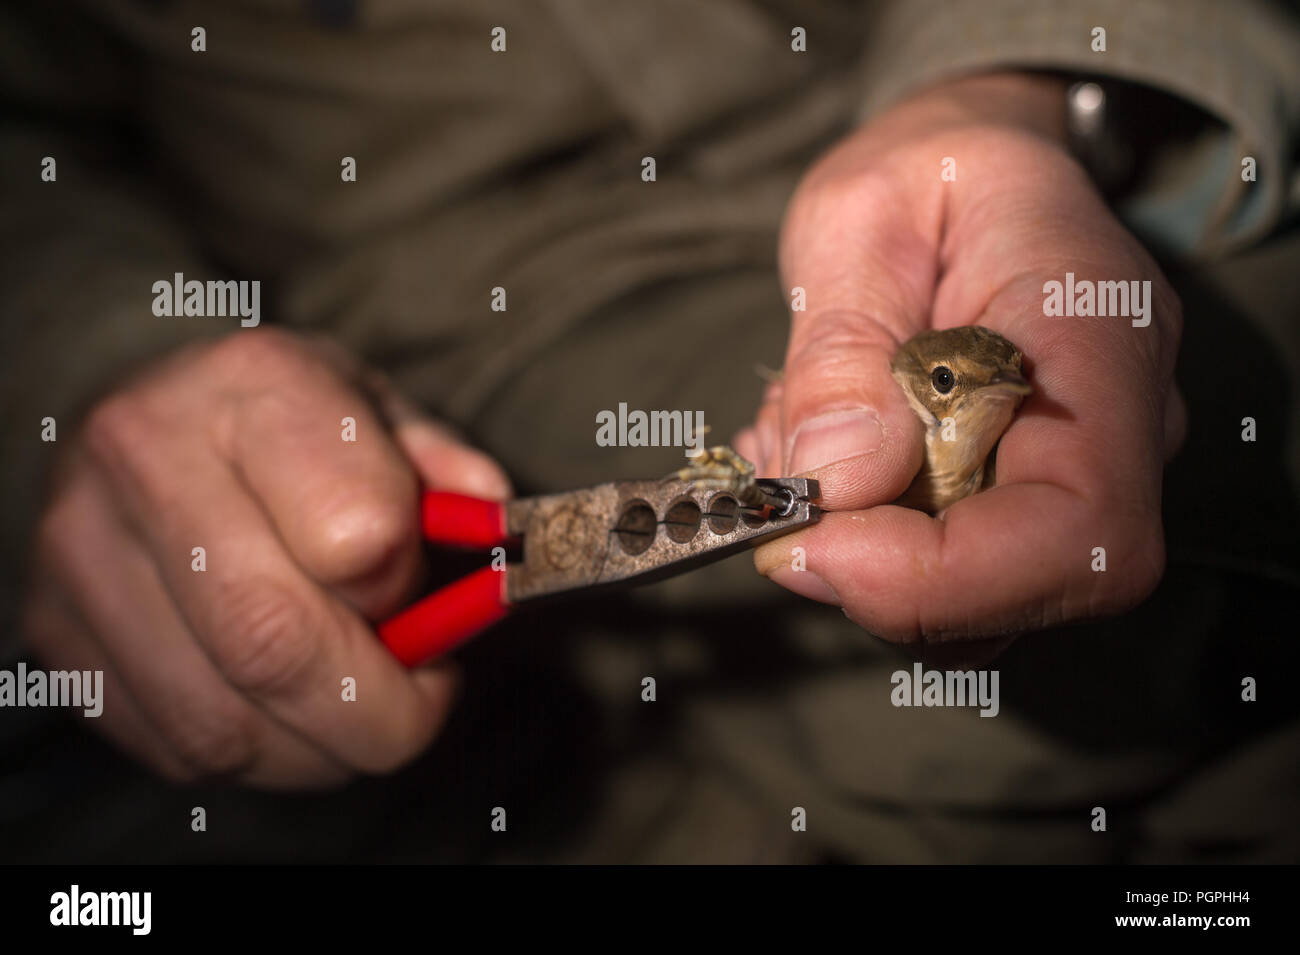 26 de agosto de 2018, Alemania: El ornitólogo Ingolf Mennewitz Todte cierra  un anillo con una pinza alrededor de los pies de un junco cerúlea que ha  capturado en la lámina en